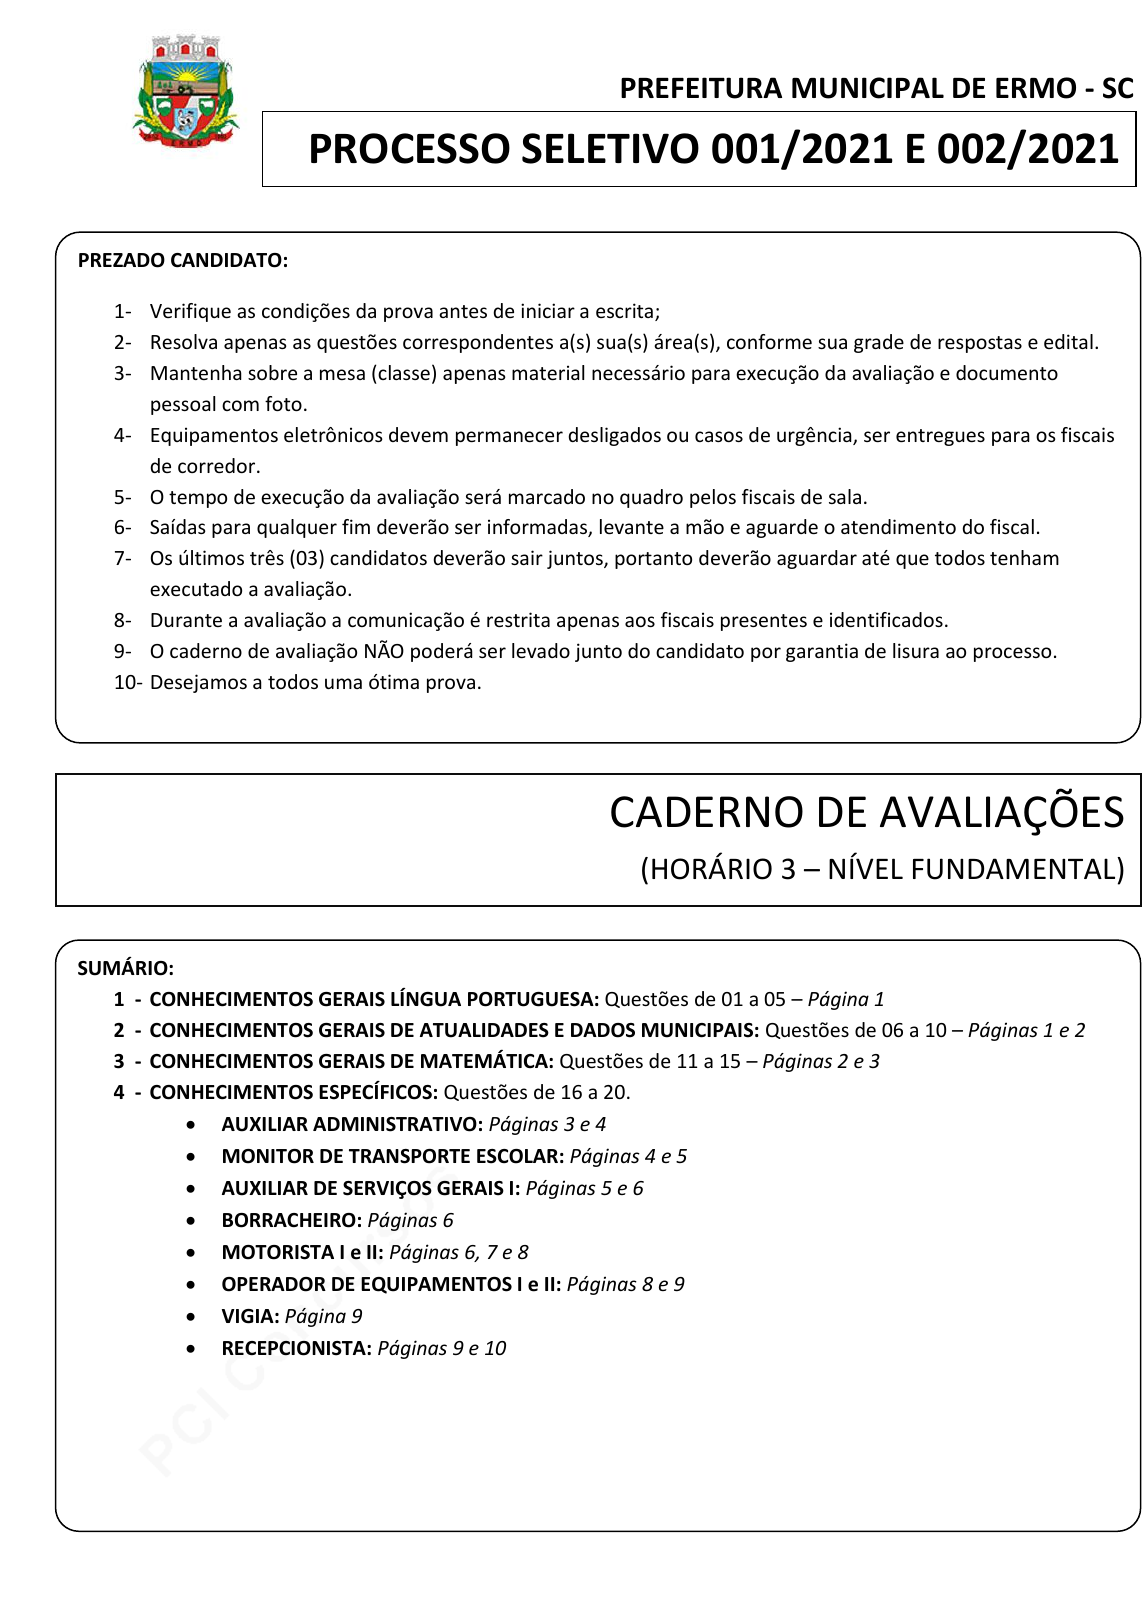 e076_1000 testes Portugues.pmd - Curso Sólon Concursos